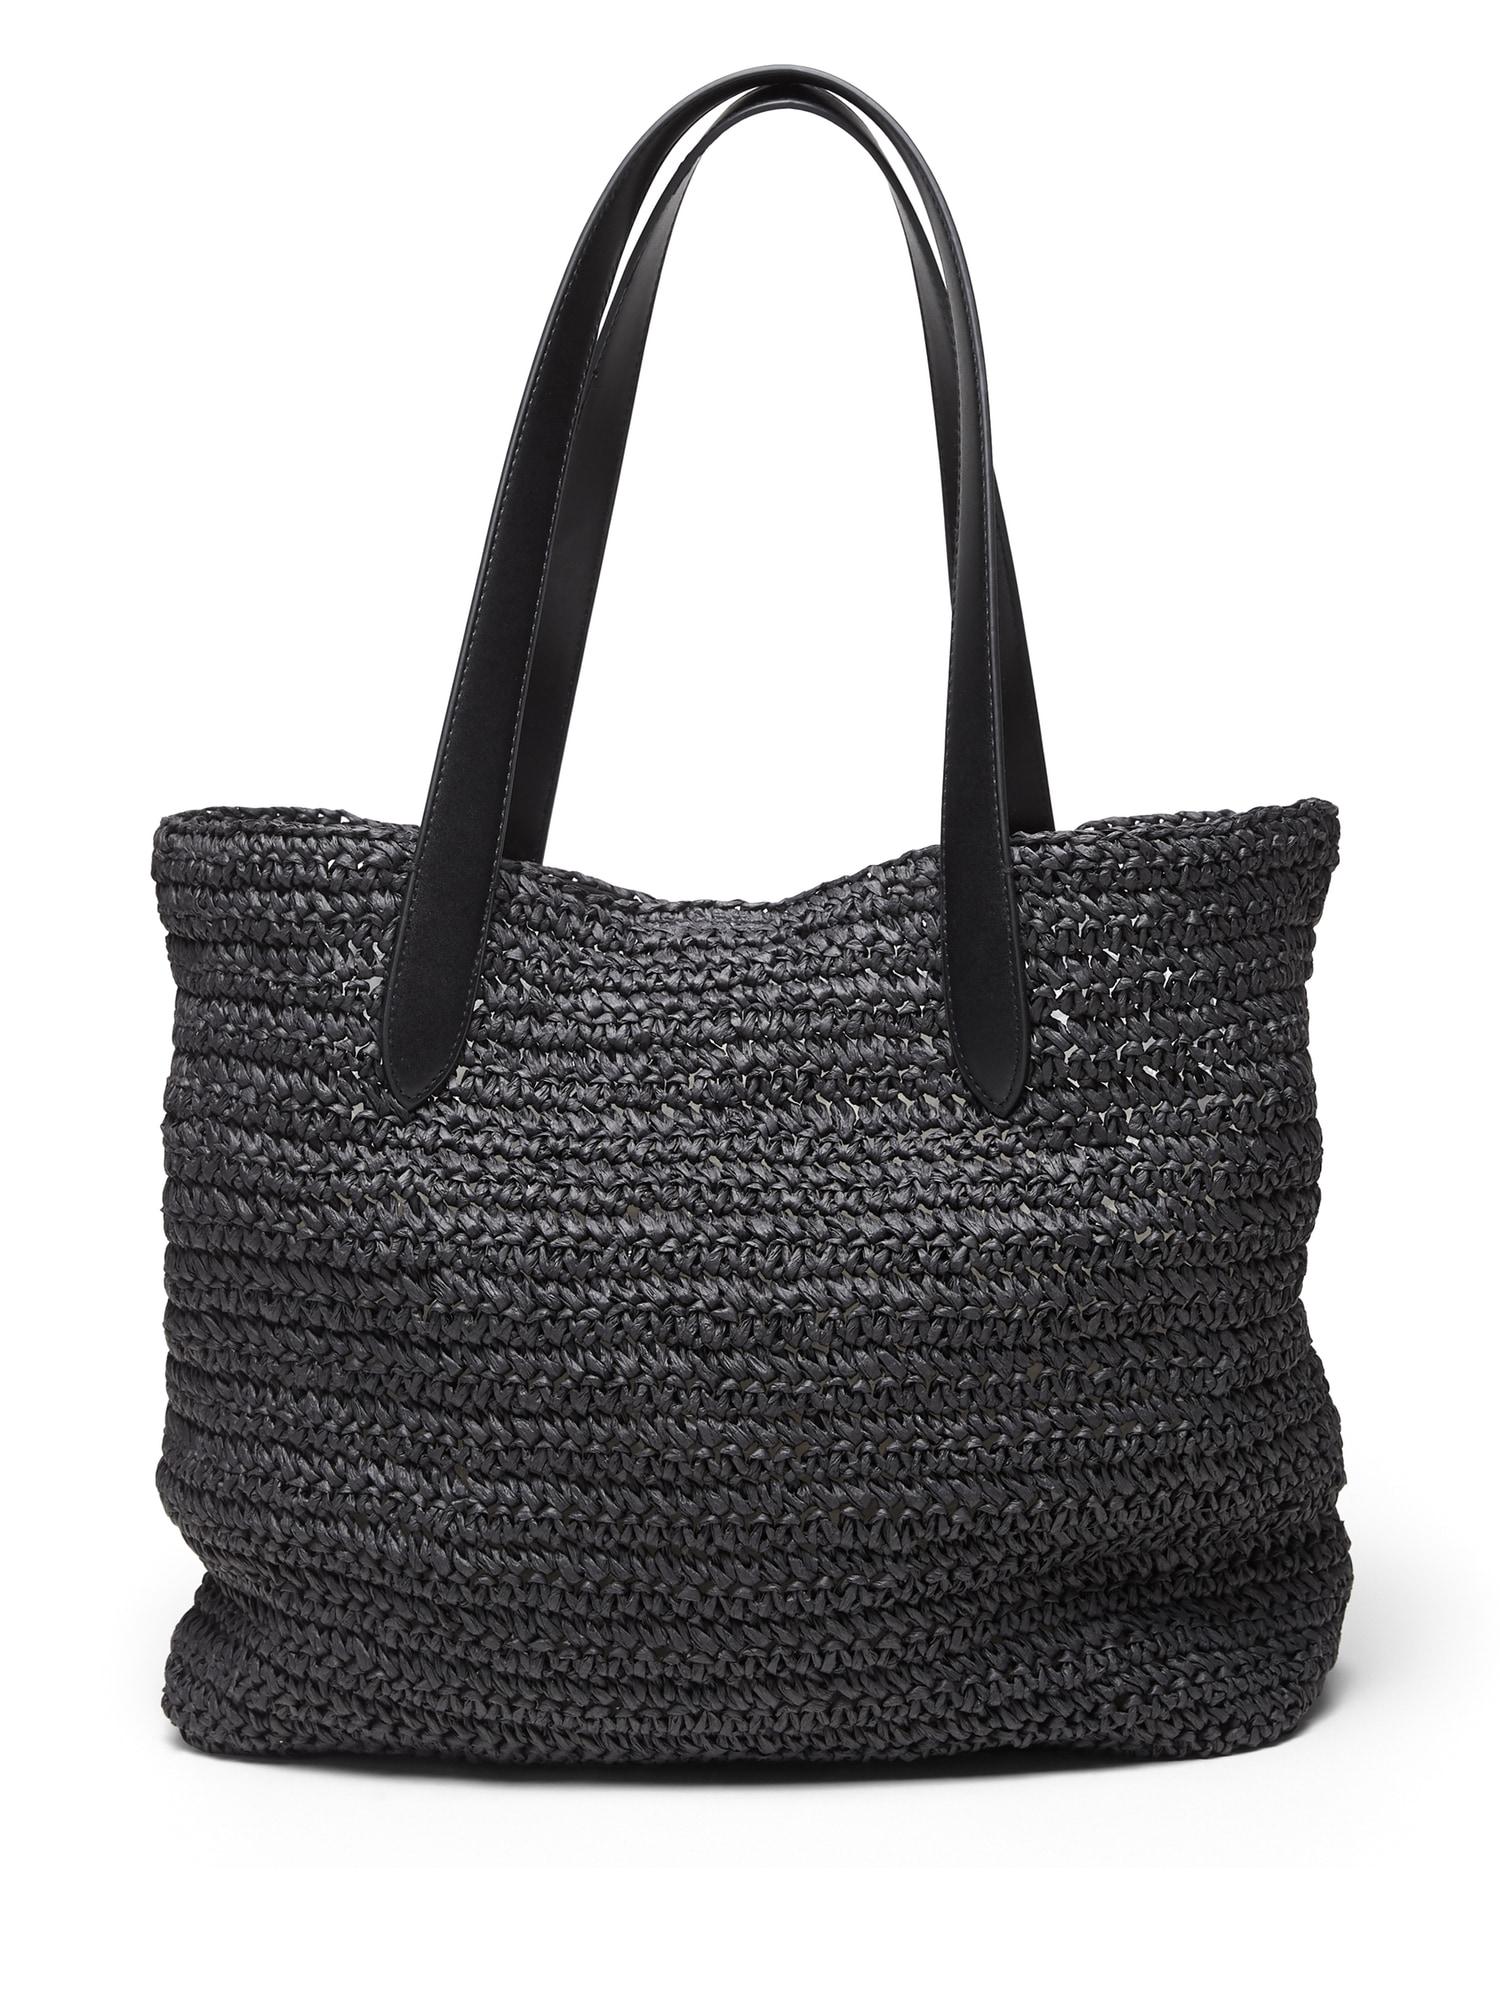 Do Black Handbags Go With Everything | semashow.com